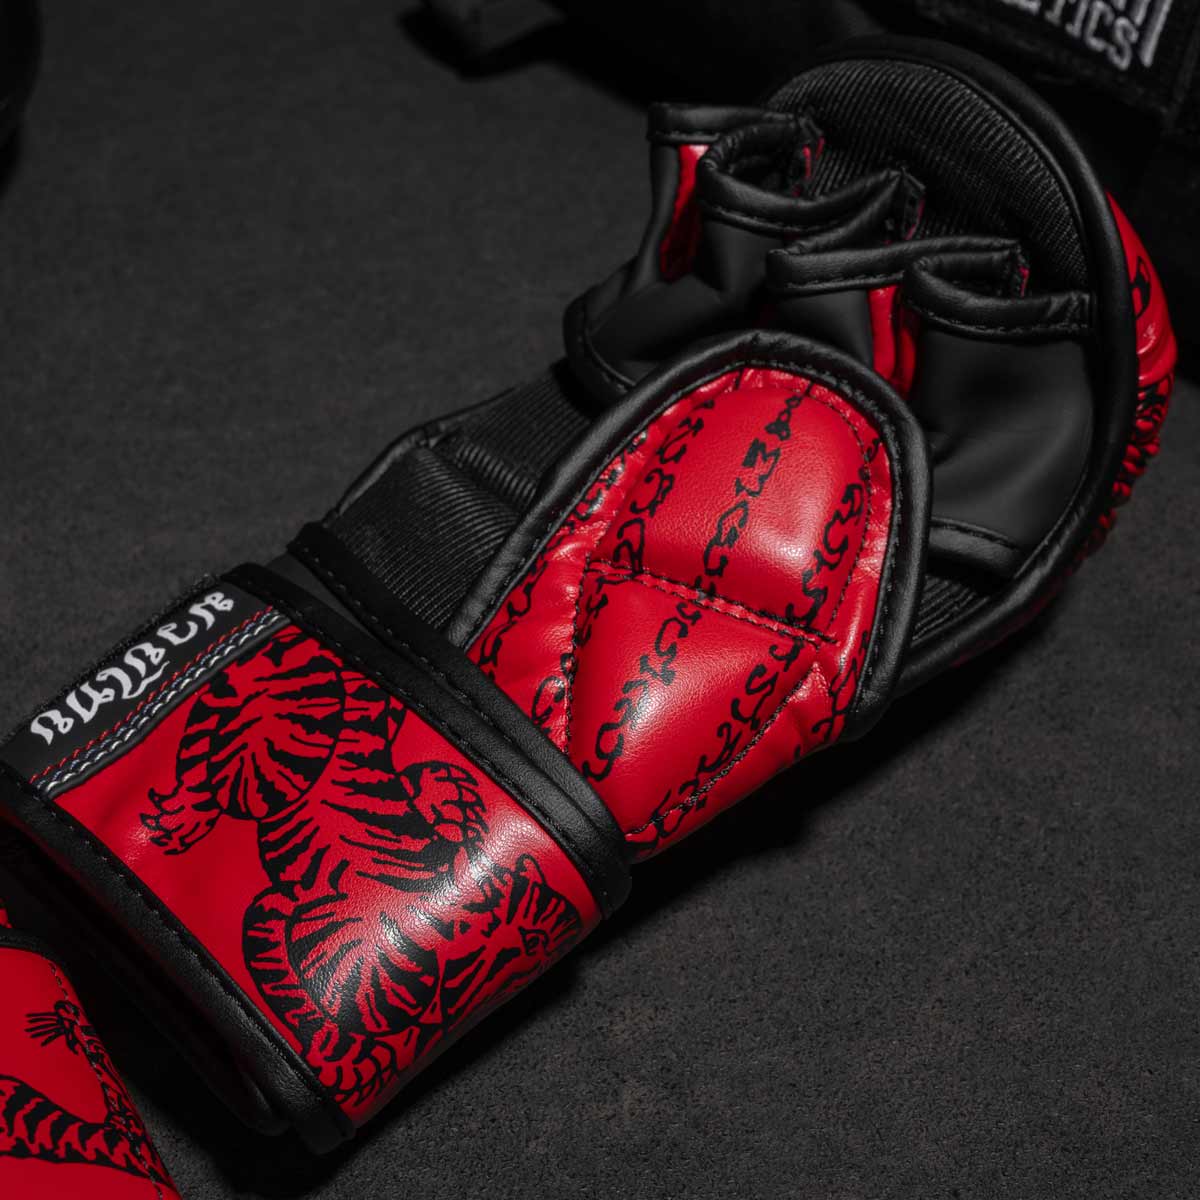 Phantom Muay Thai Handschuhe für Thaiboxen und MMA Sparring, Wettkampf und Training. Im traditionellen Sak Yant Design und der Farbe Rot.